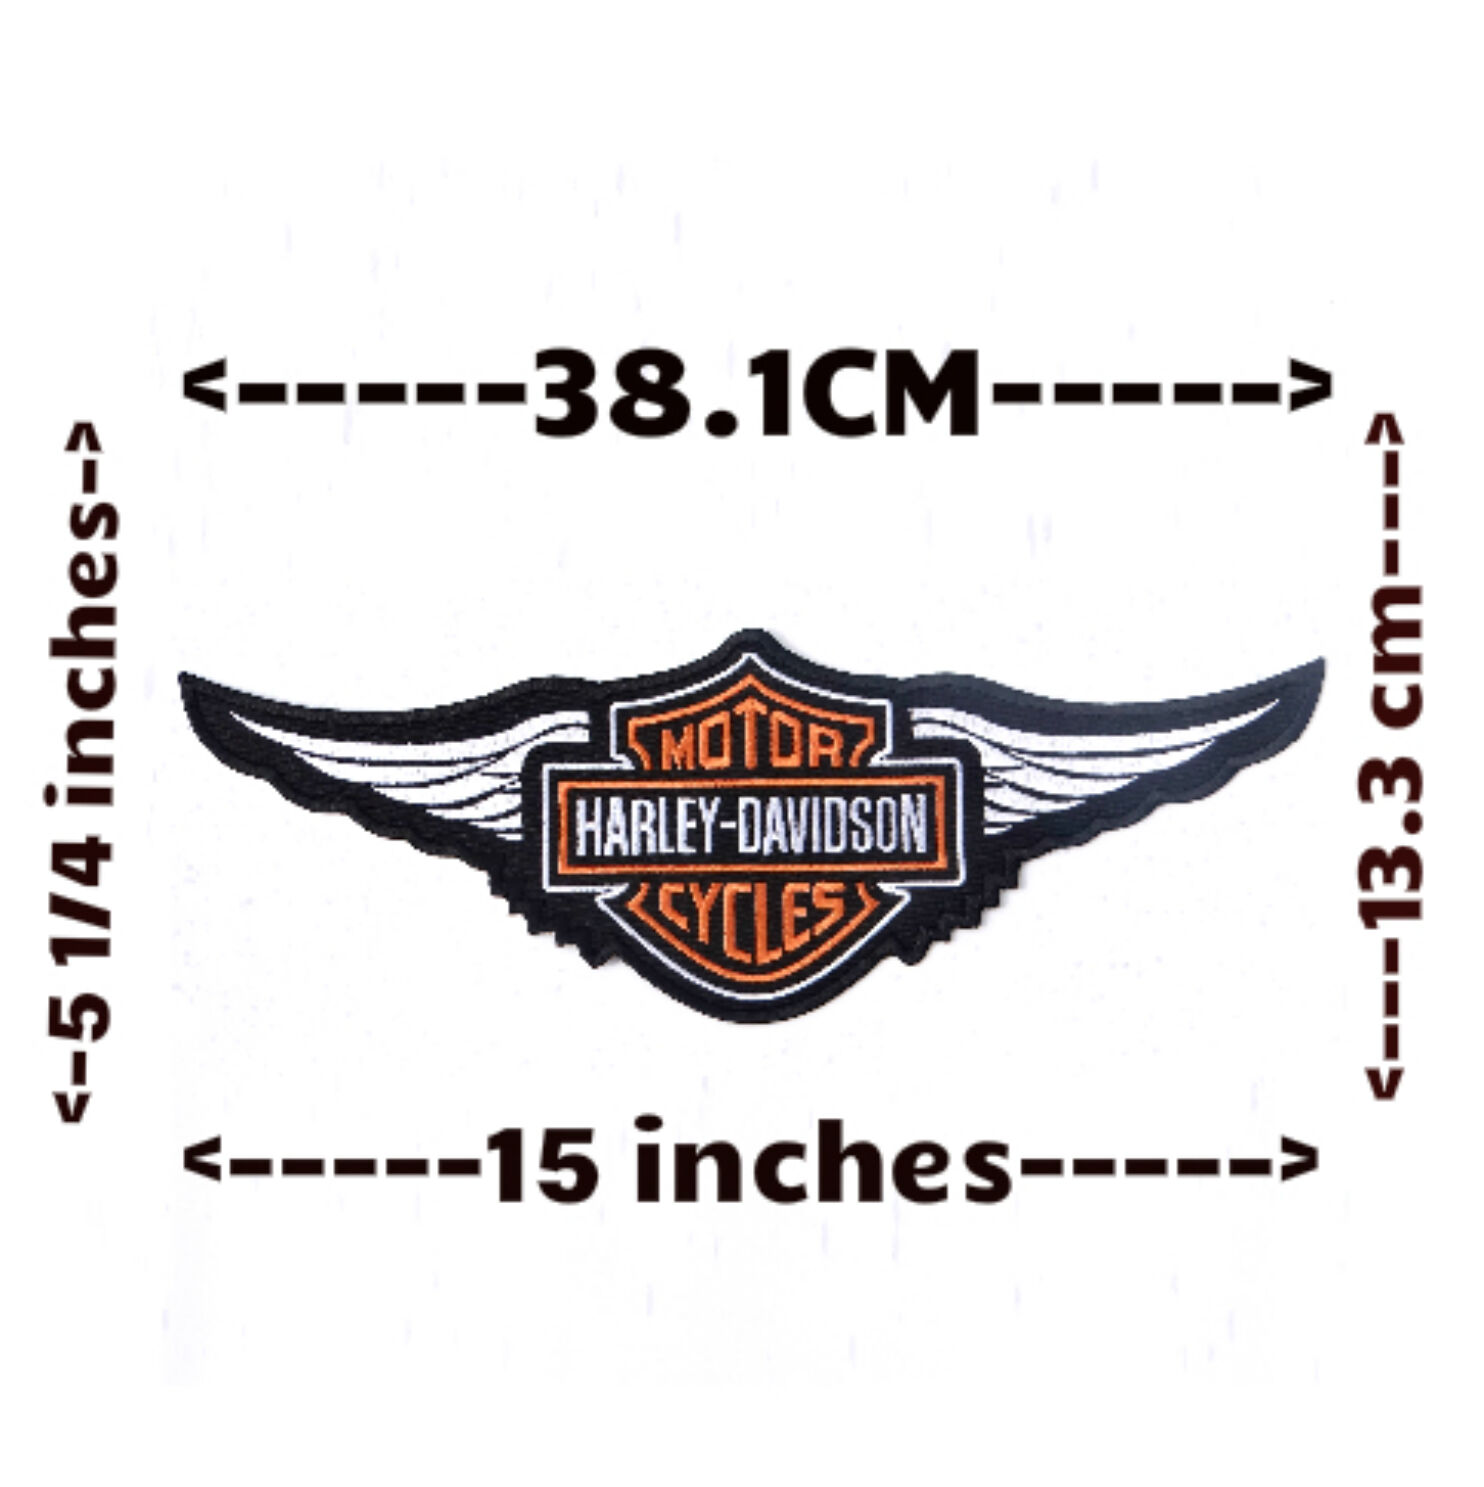 Harley Davidson Road King Motorcycle Vest Patch Emblem 4" x 1 5/8" EMB065063 